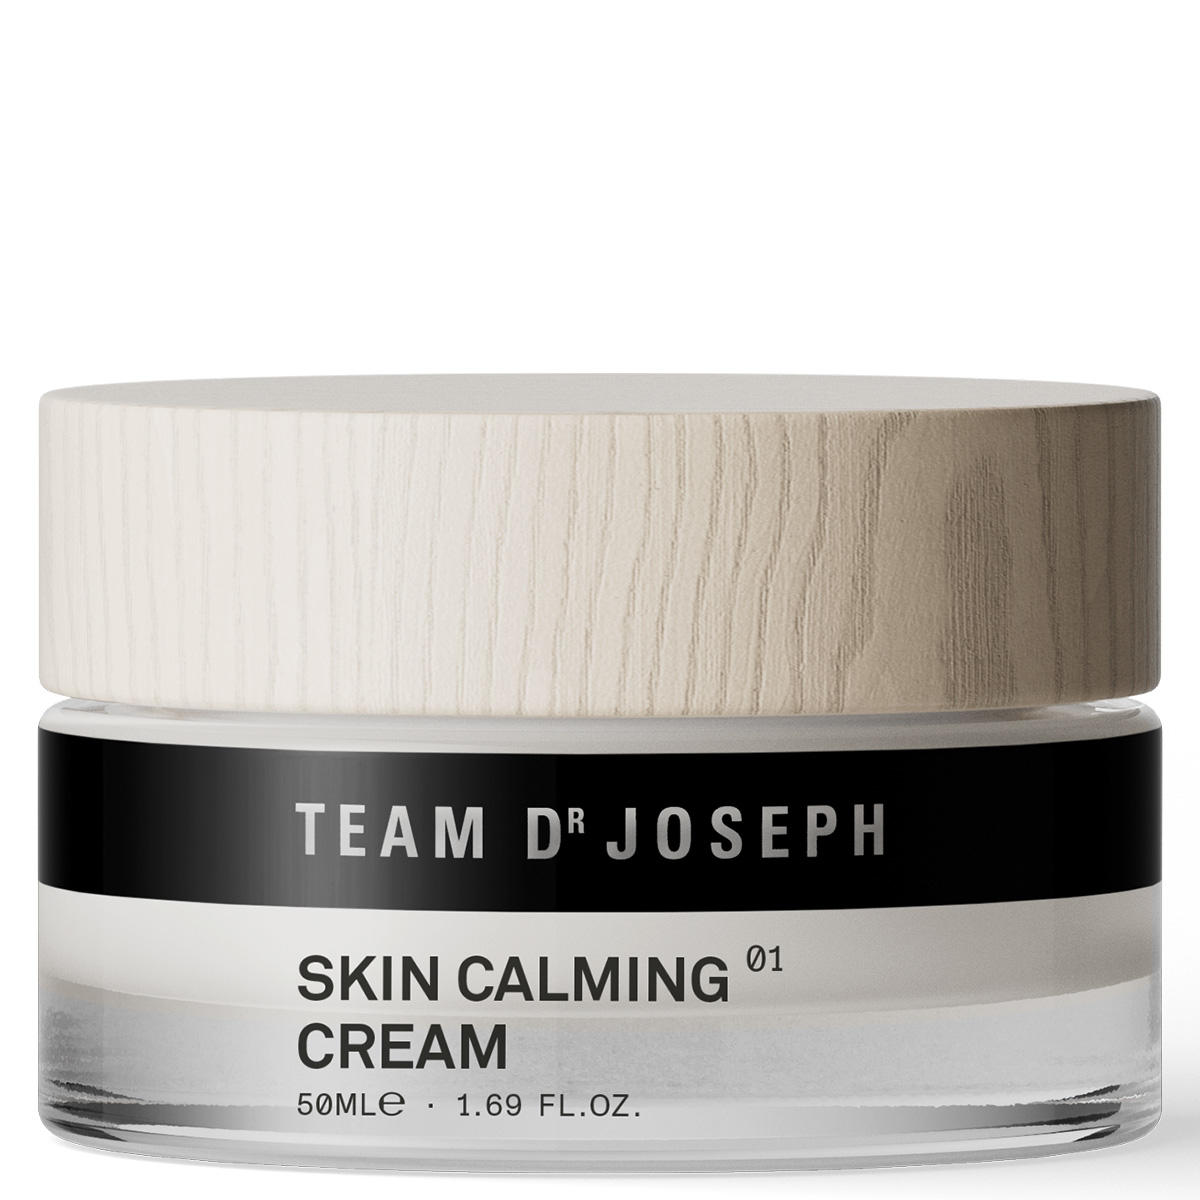 TEAM DR JOSEPH Skin Calming Cream 50 ml - 1